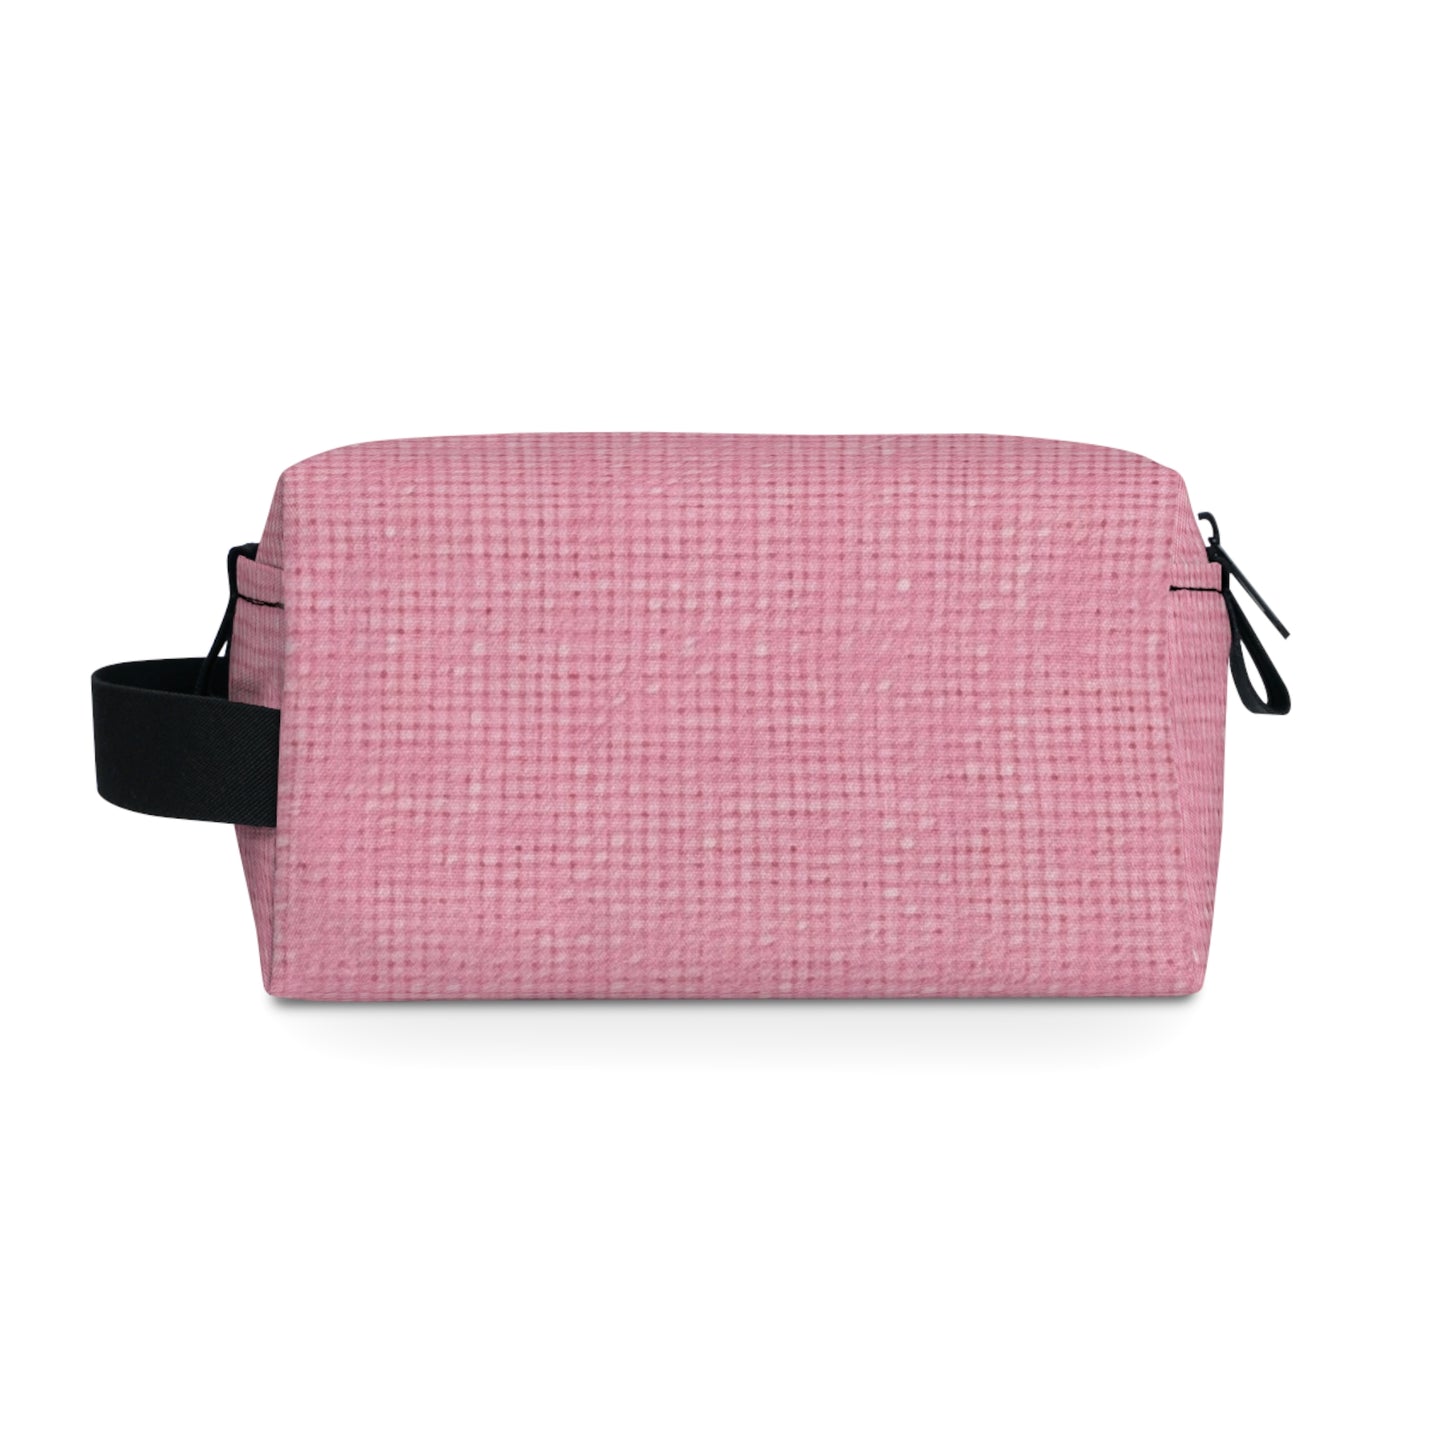 Pastel Rose Pink: Denim-Inspired, Refreshing Fabric Design - Toiletry Bag